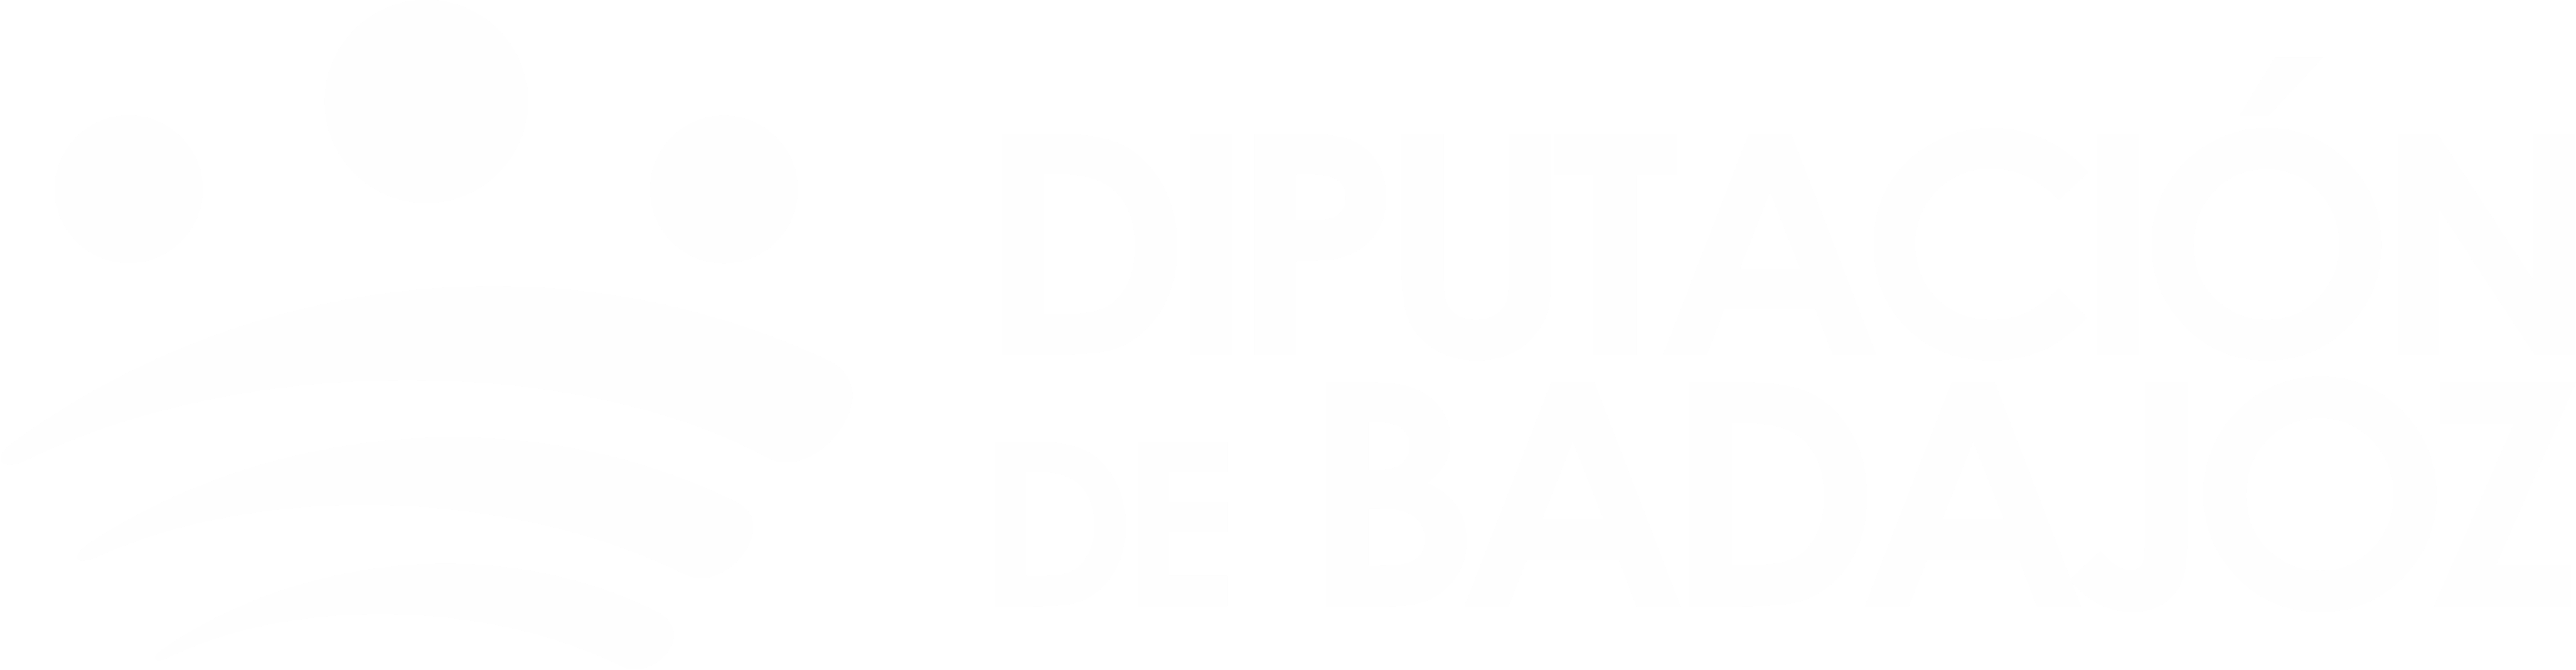 Logotipo Diputación de Badajoz